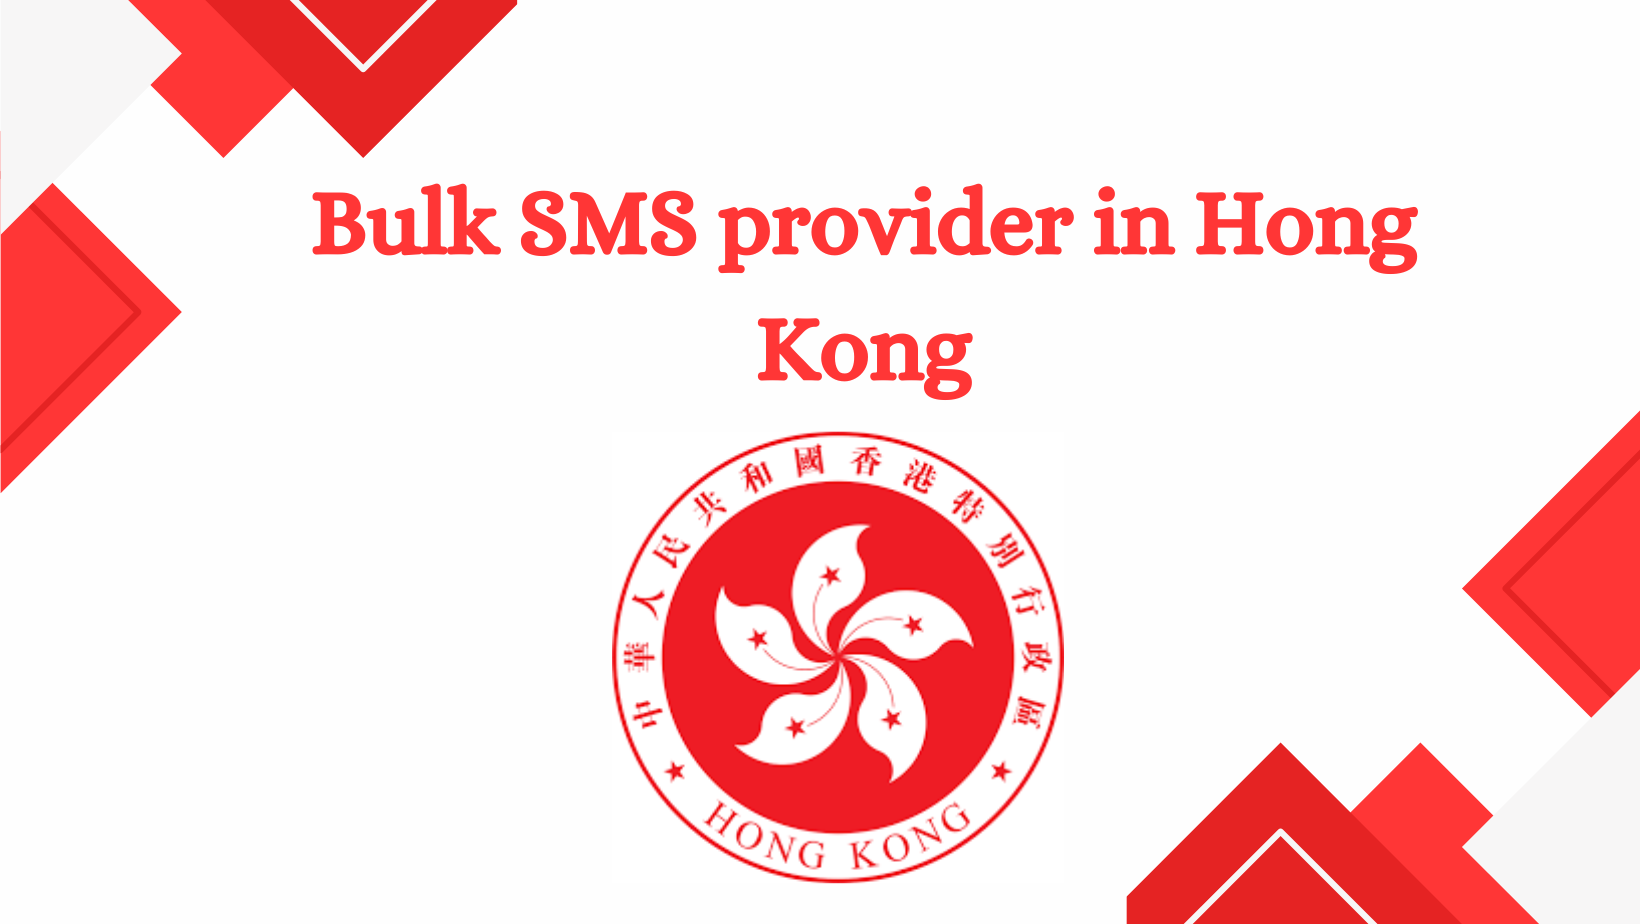 Bulk SMS provider in Hong Kong